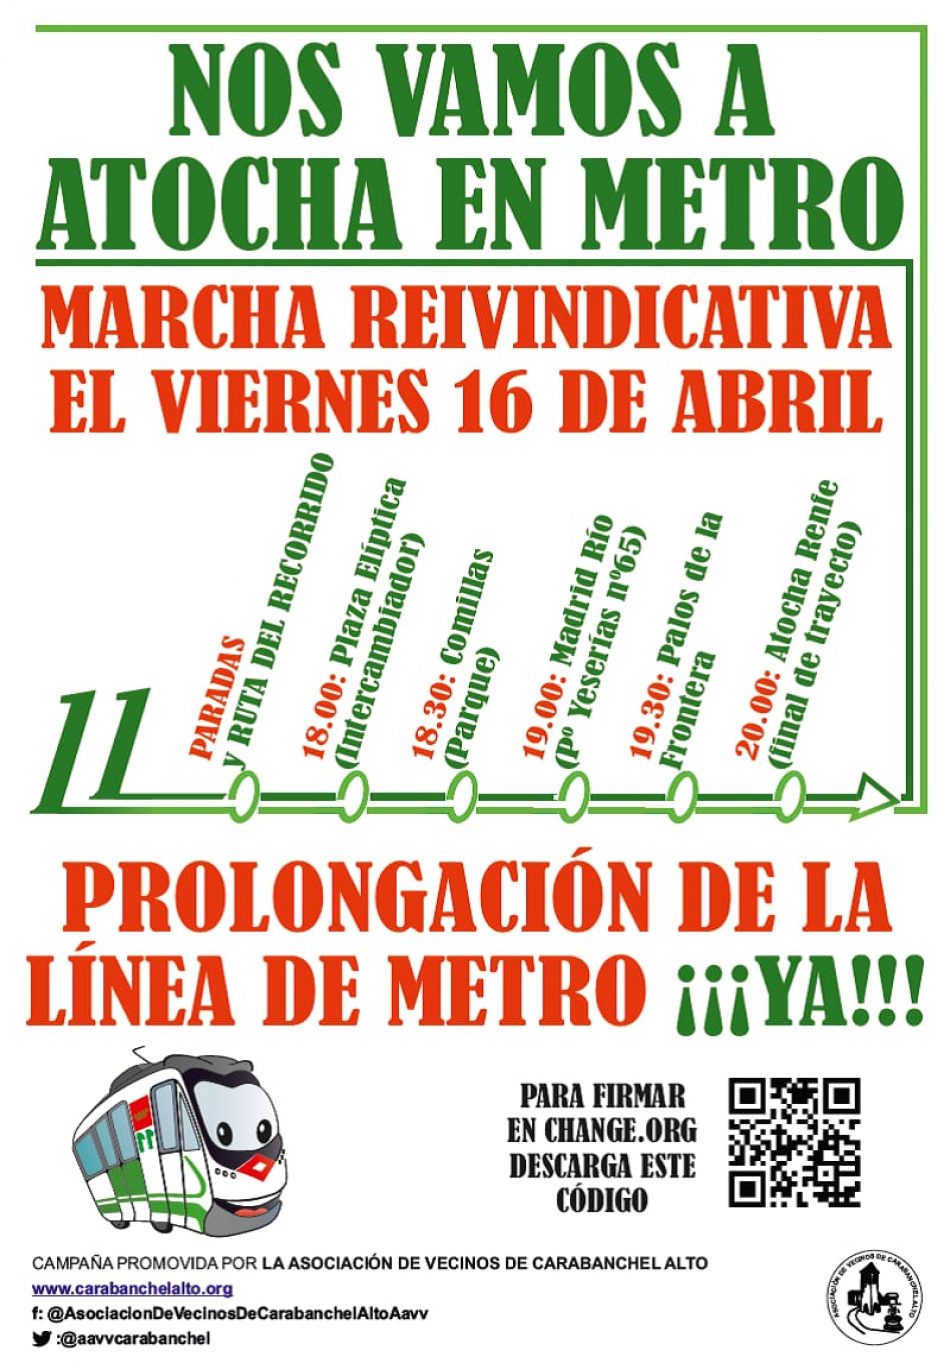 Marcha desde Plaza Elíptica a Atocha para reclamar la prolongación de la línea 11 de Metro